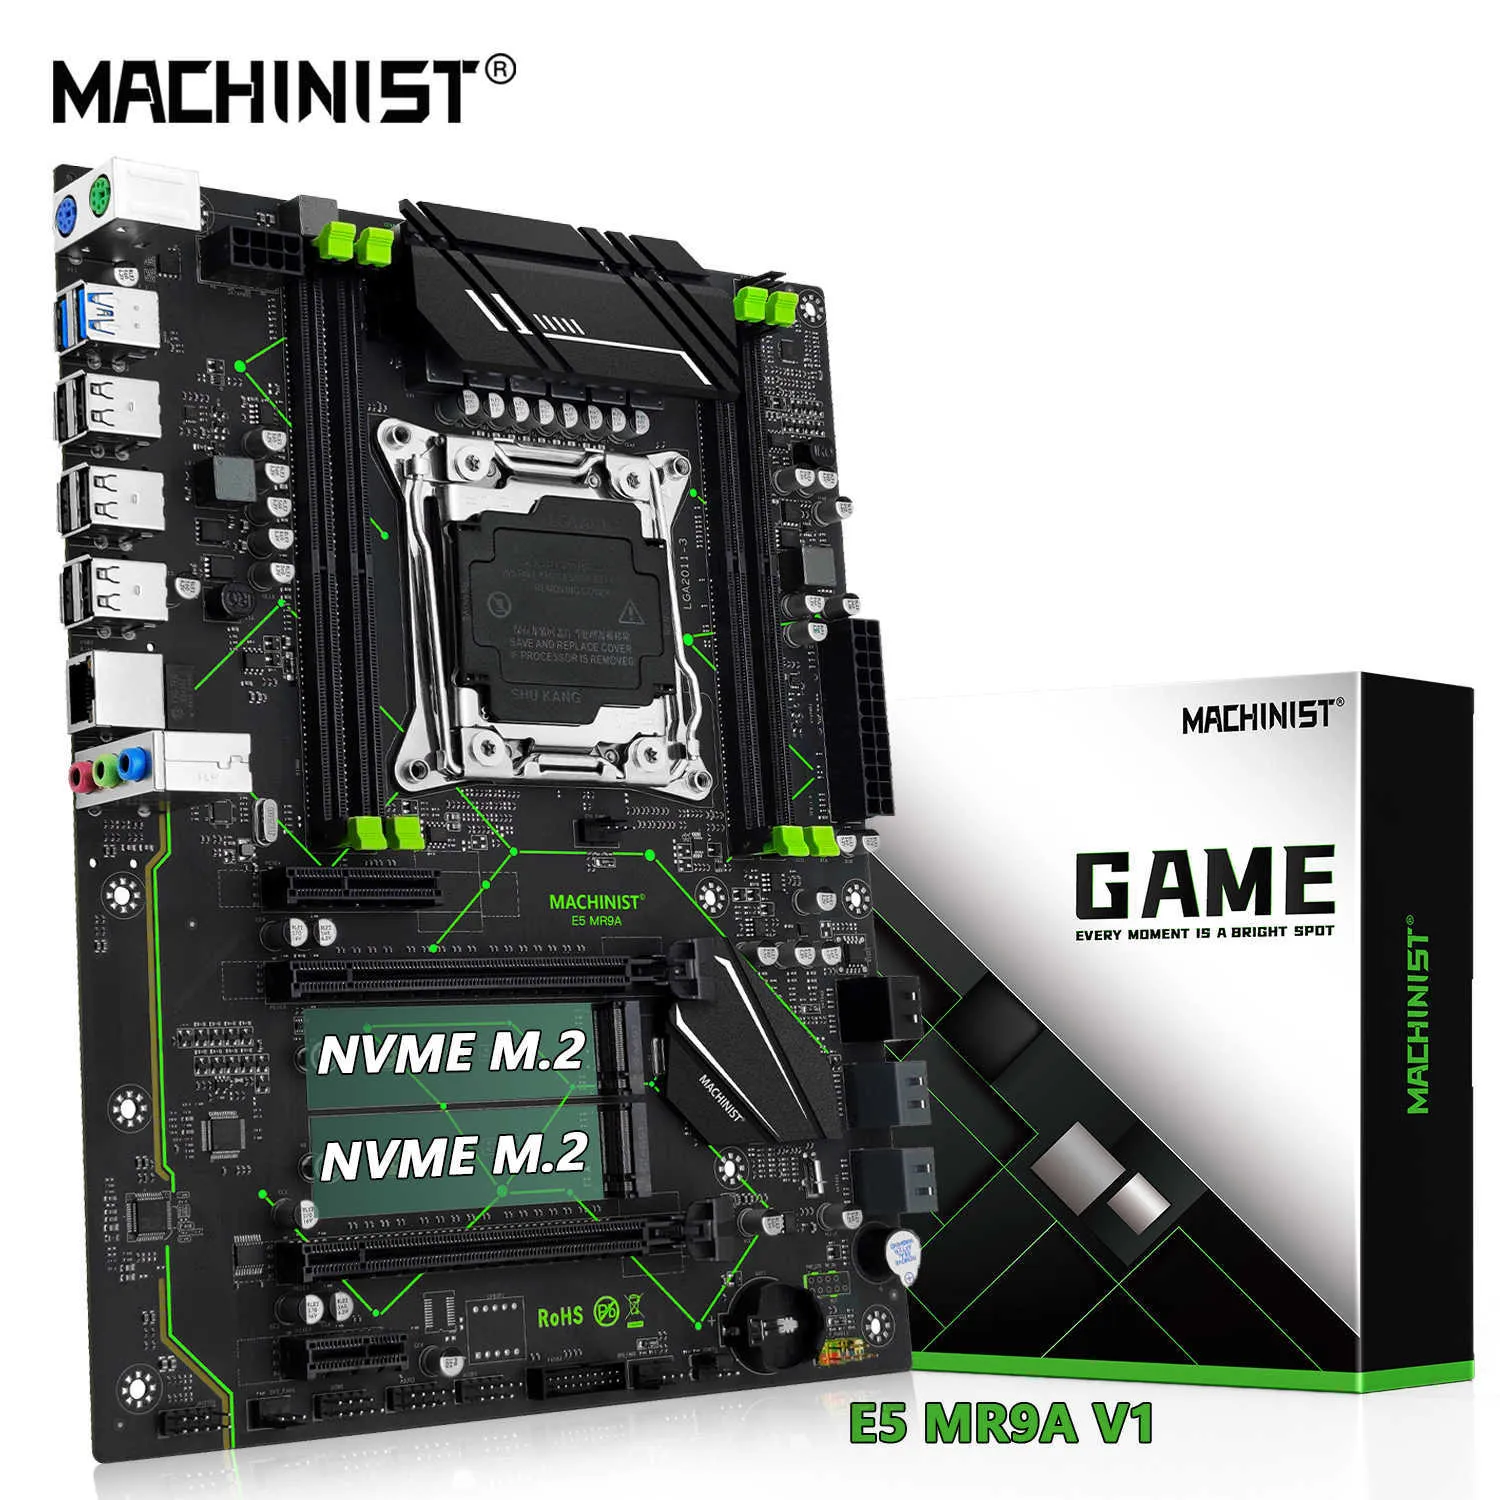 Machinist E5 MR9A V1 Prise en charge de la carte mère LGA 2011-3 Xeon E5 V3 V4 Processeur d'unité centrale DDR4 RAM Quatre canaux Mémoire ATX NVME M.2